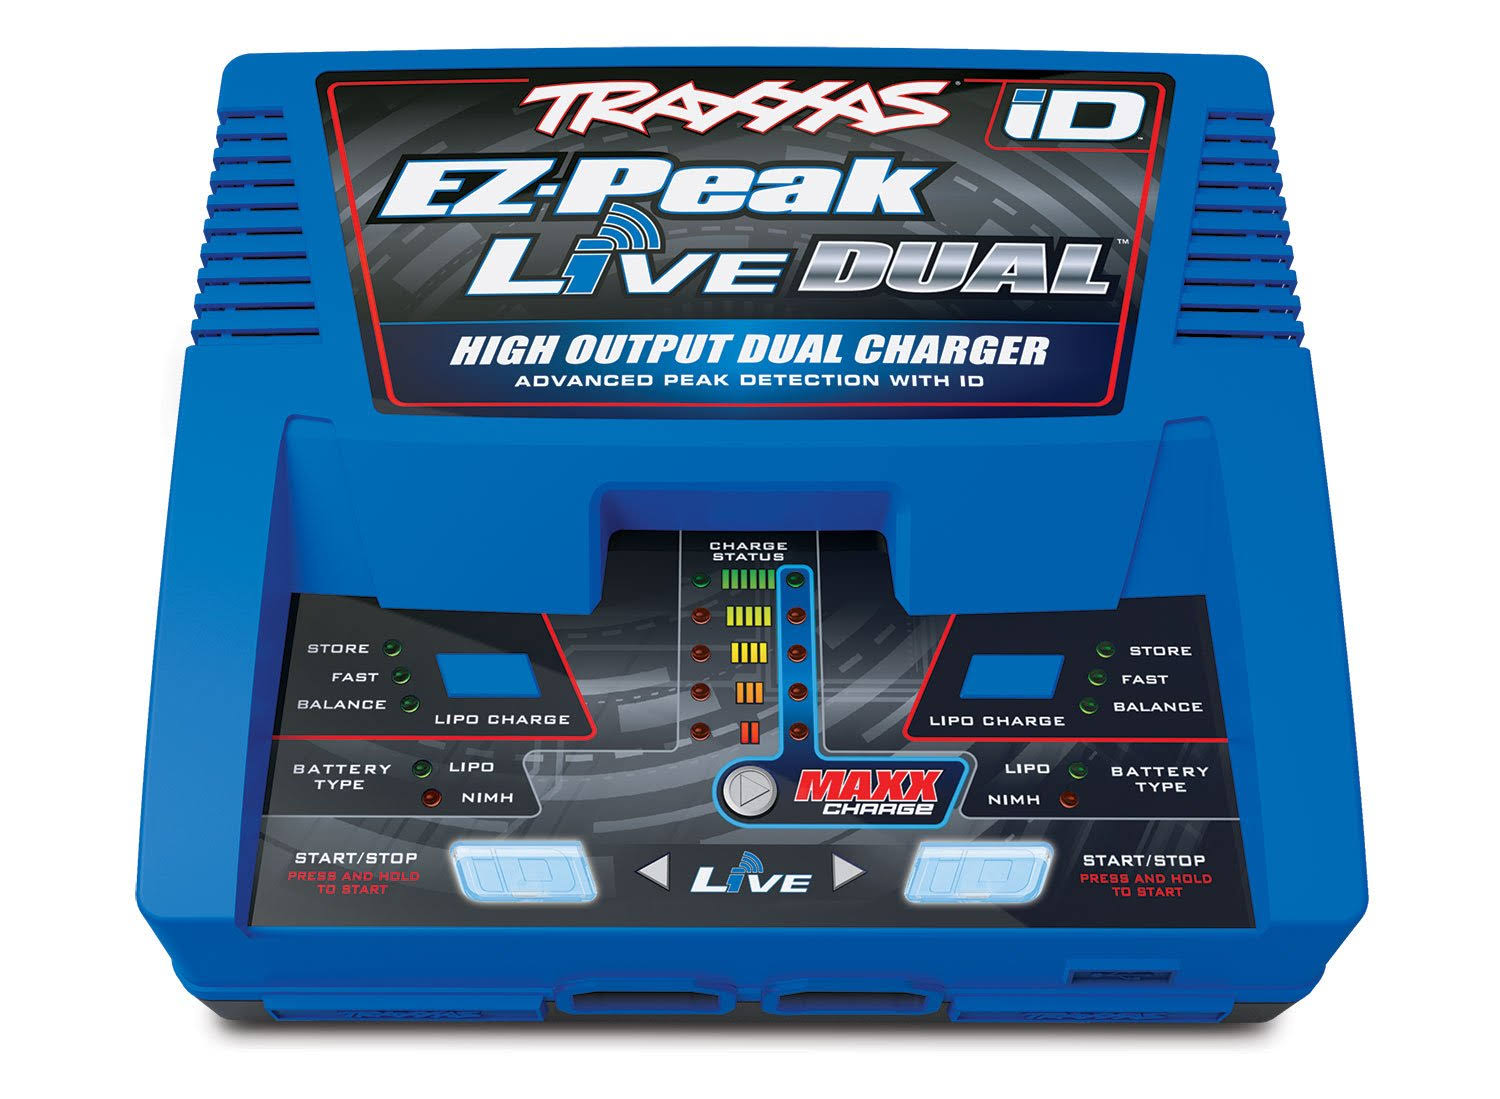 Traxxas Charger, EZ-Peak Live Dual, 200W, NiMH/LiPo with iD Auto